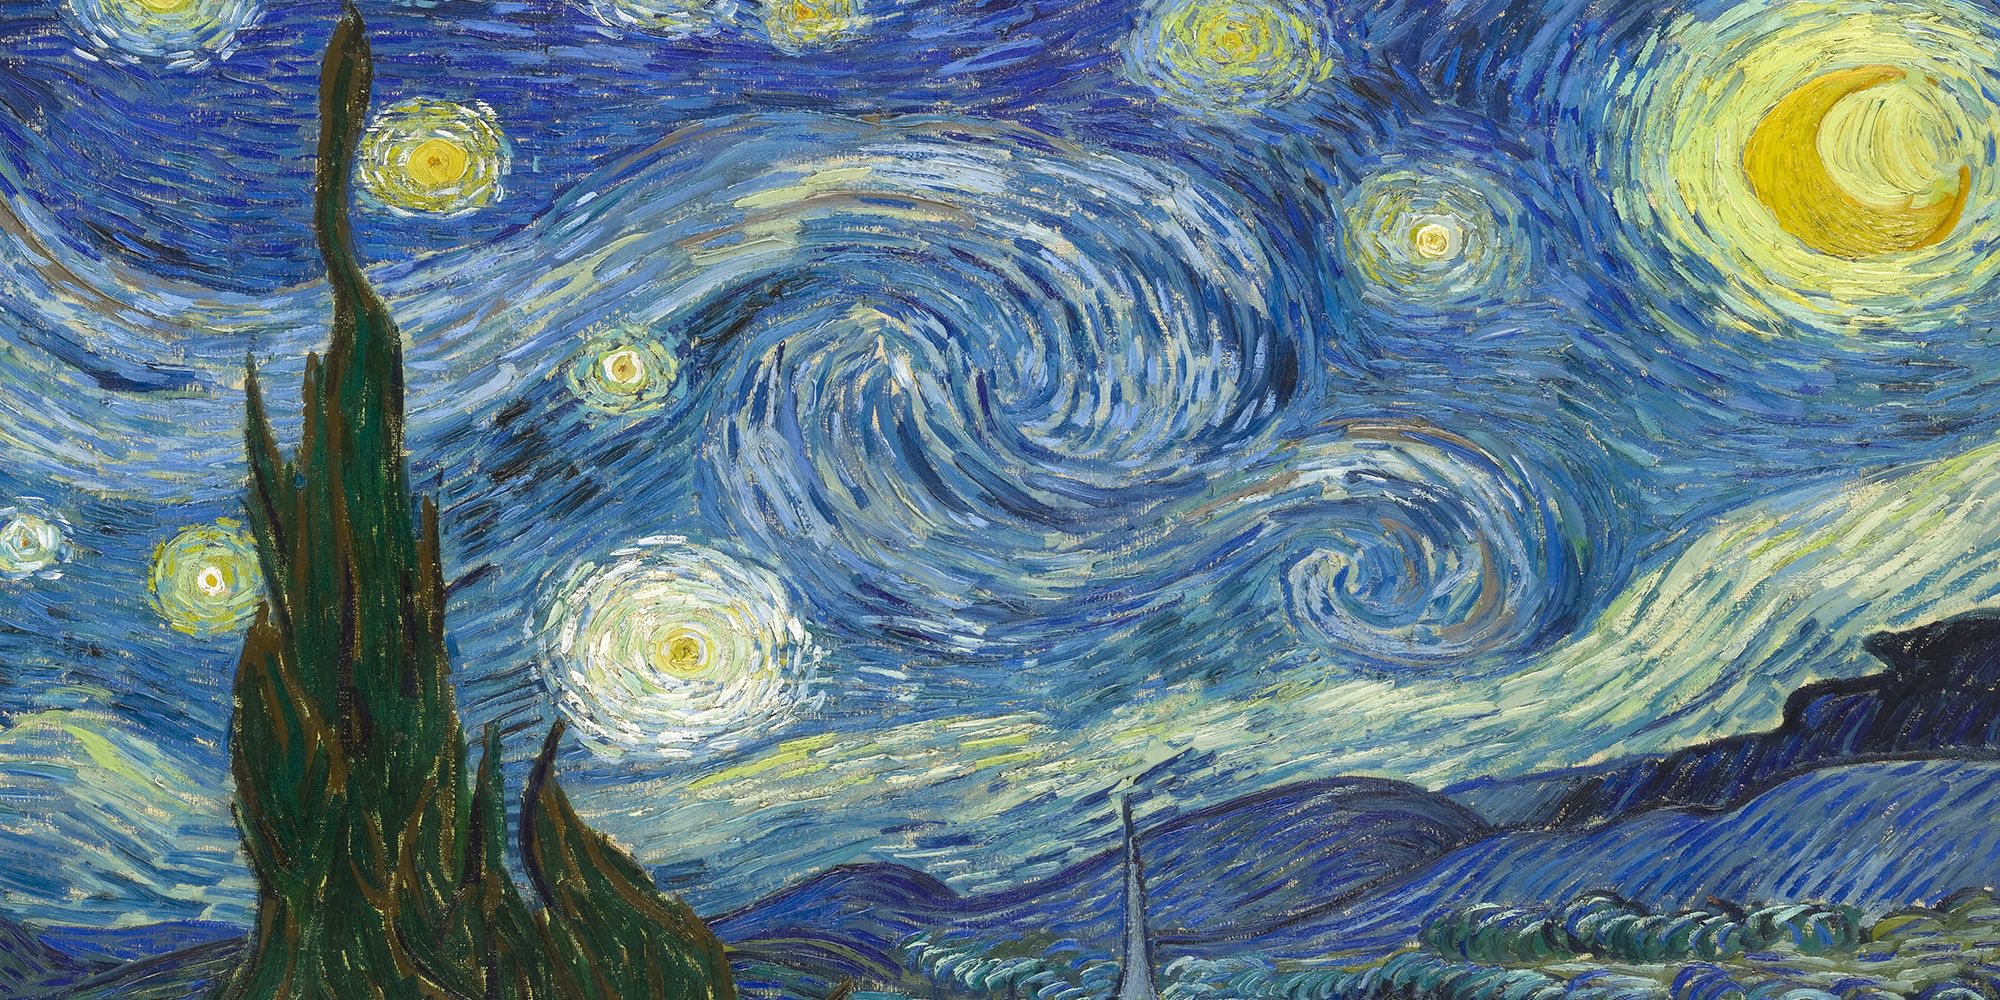 Il modo migliore per godersi il dipinto di Van Gogh “La notte